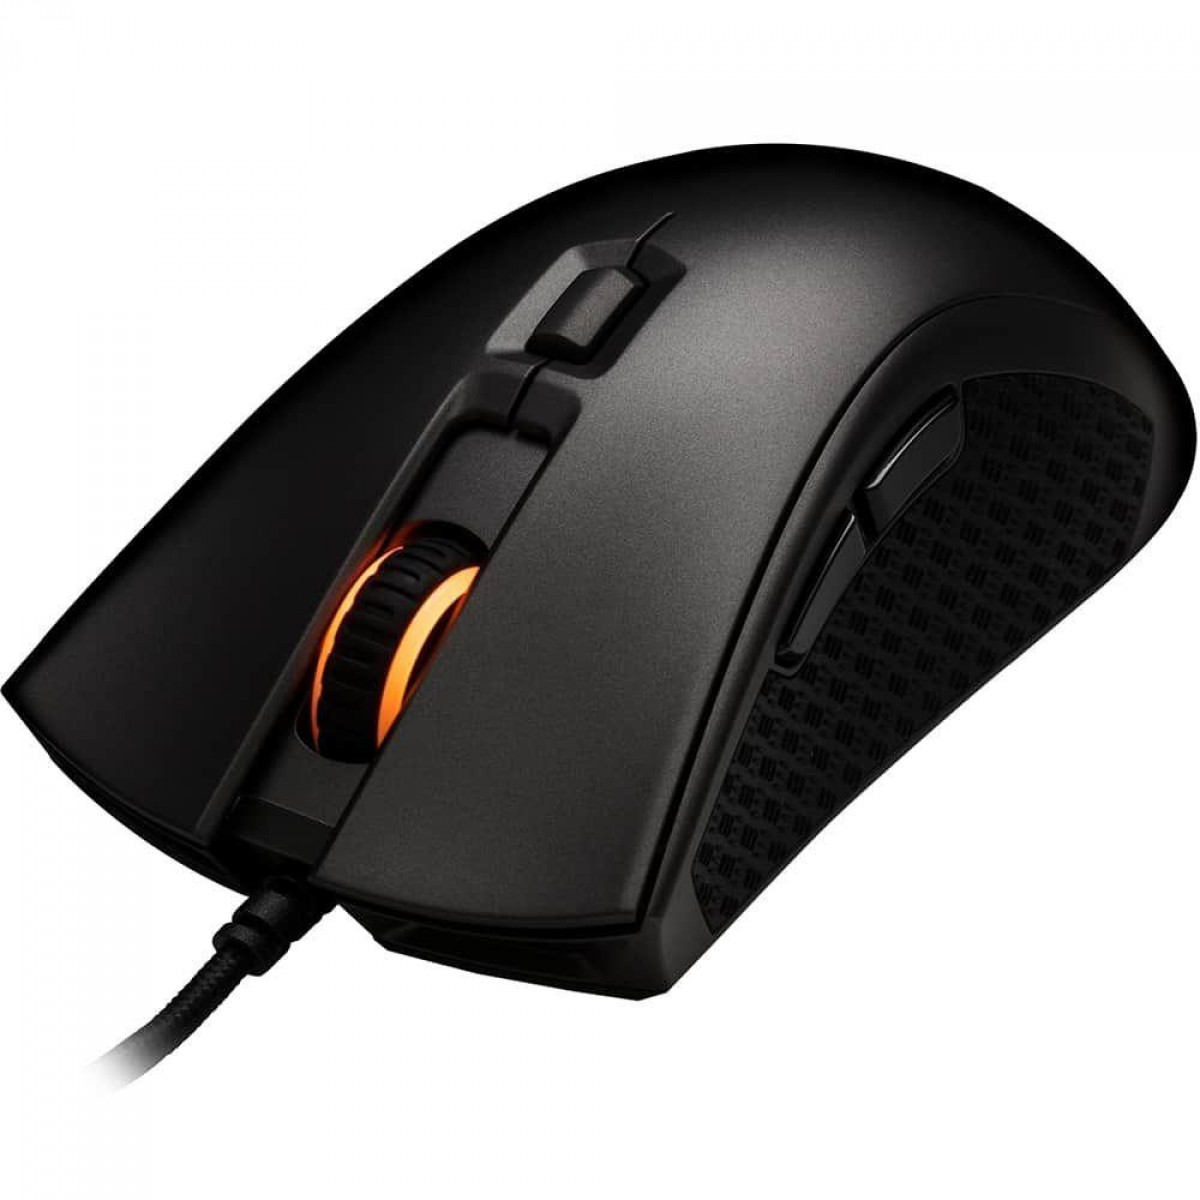 Mouse Gamer HyperX Pulsefire FPS PRO, RGB, 16000 DPI, 6 Botões, USB, Black, HX-MC003B